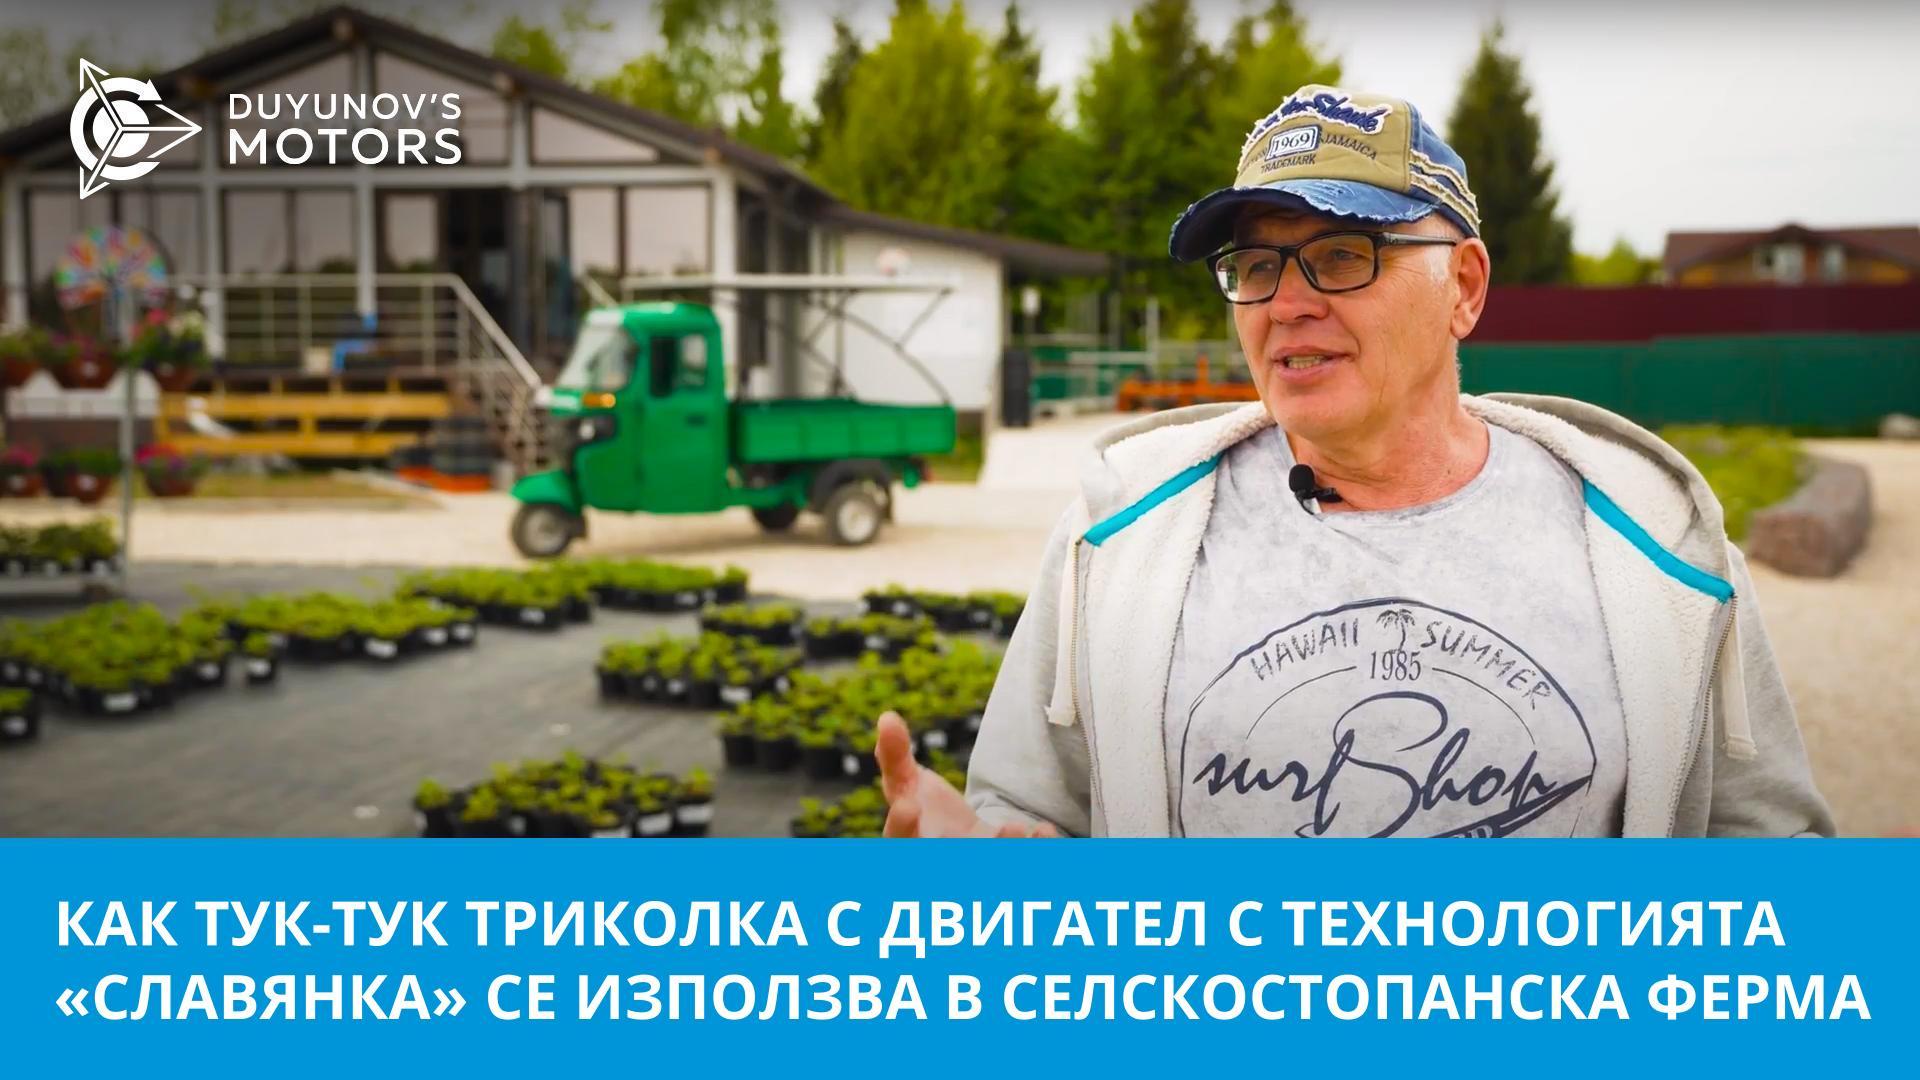 Помощник в екологичен бизнес: как тук-тук триколка с двигател с технологията «Славянка» се използва в селскостопанска ферма